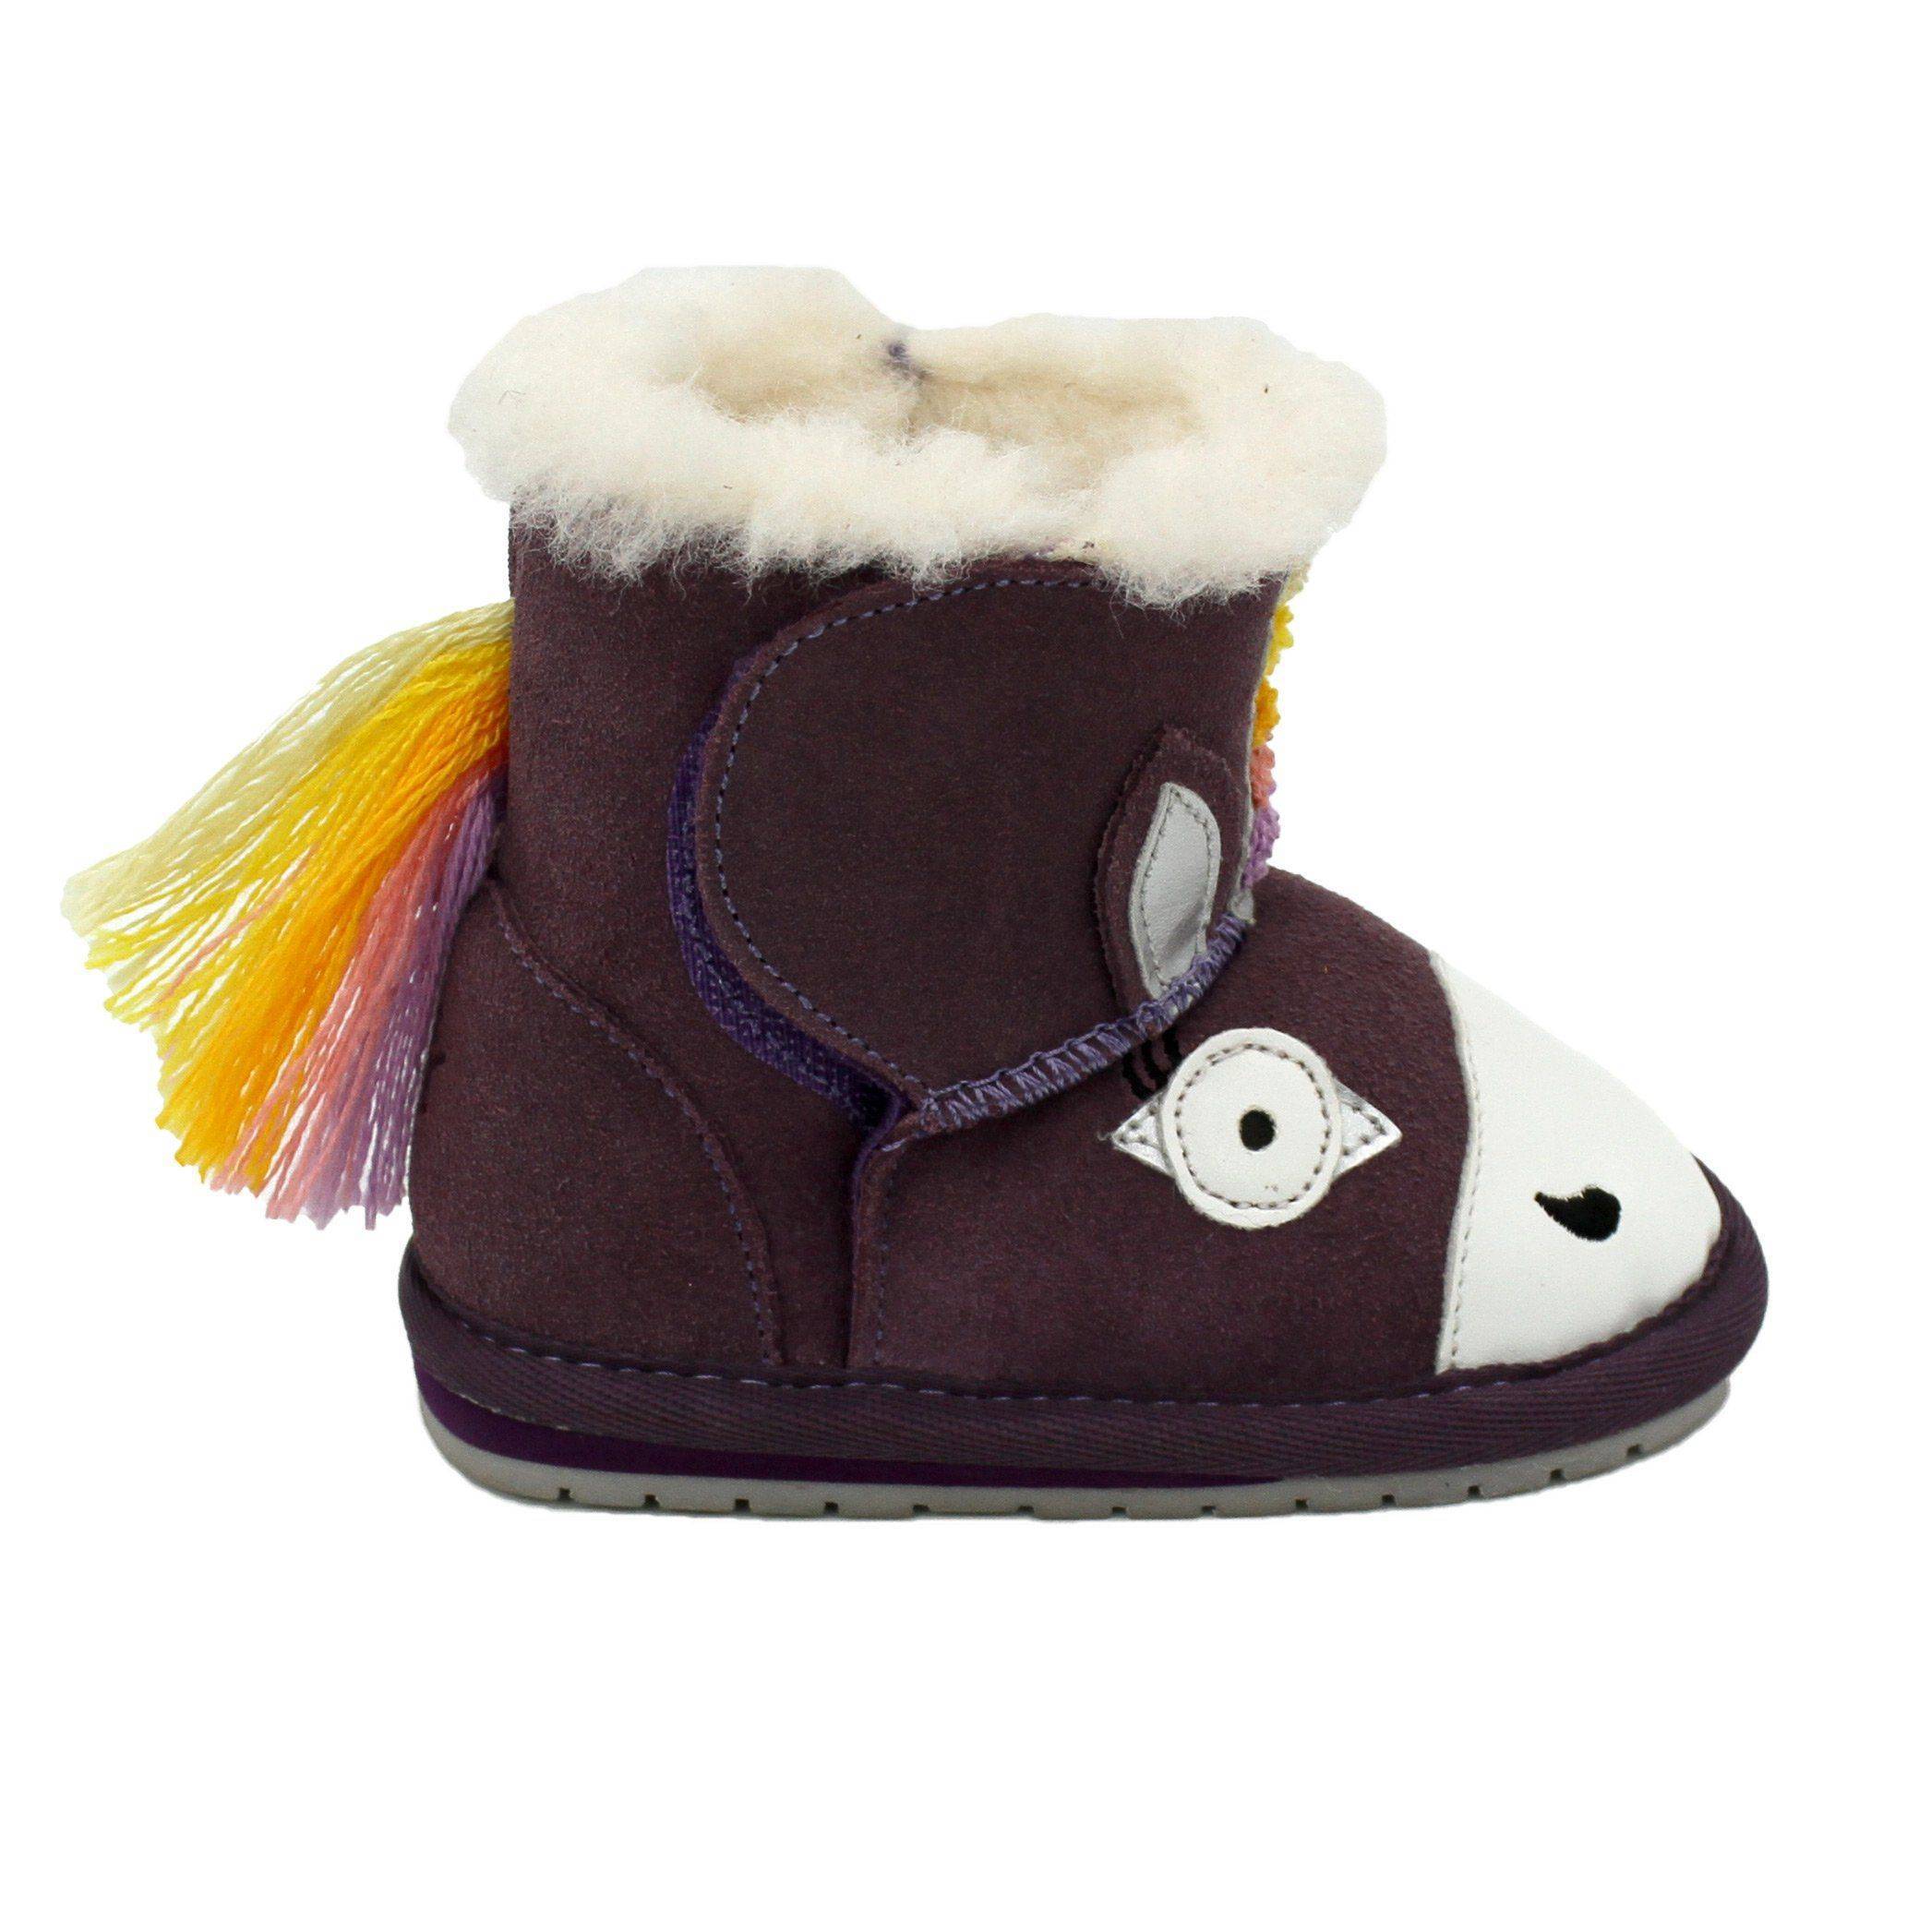 Детские ботинки из овчины (угги) EMU Australia(Magical Unicorn Walker B12409), фиолетовые, цвет фиолетовый, размер 21 - фото 7